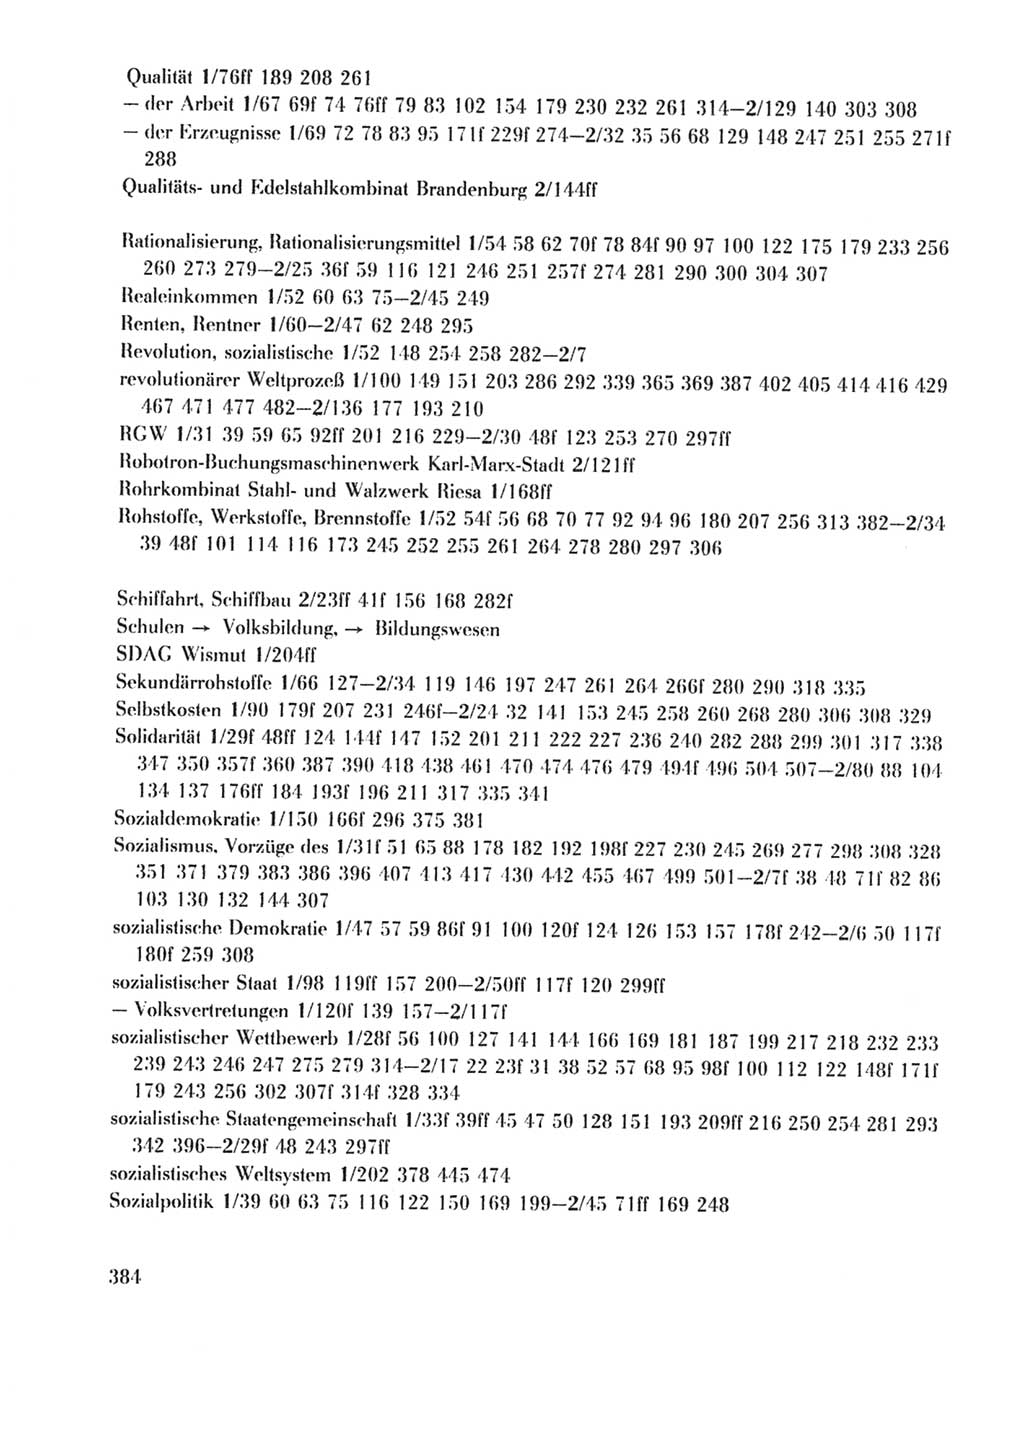 Protokoll der Verhandlungen des Ⅹ. Parteitages der Sozialistischen Einheitspartei Deutschlands (SED) [Deutsche Demokratische Republik (DDR)] 1981, Band 2, Seite 384 (Prot. Verh. Ⅹ. PT SED DDR 1981, Bd. 2, S. 384)